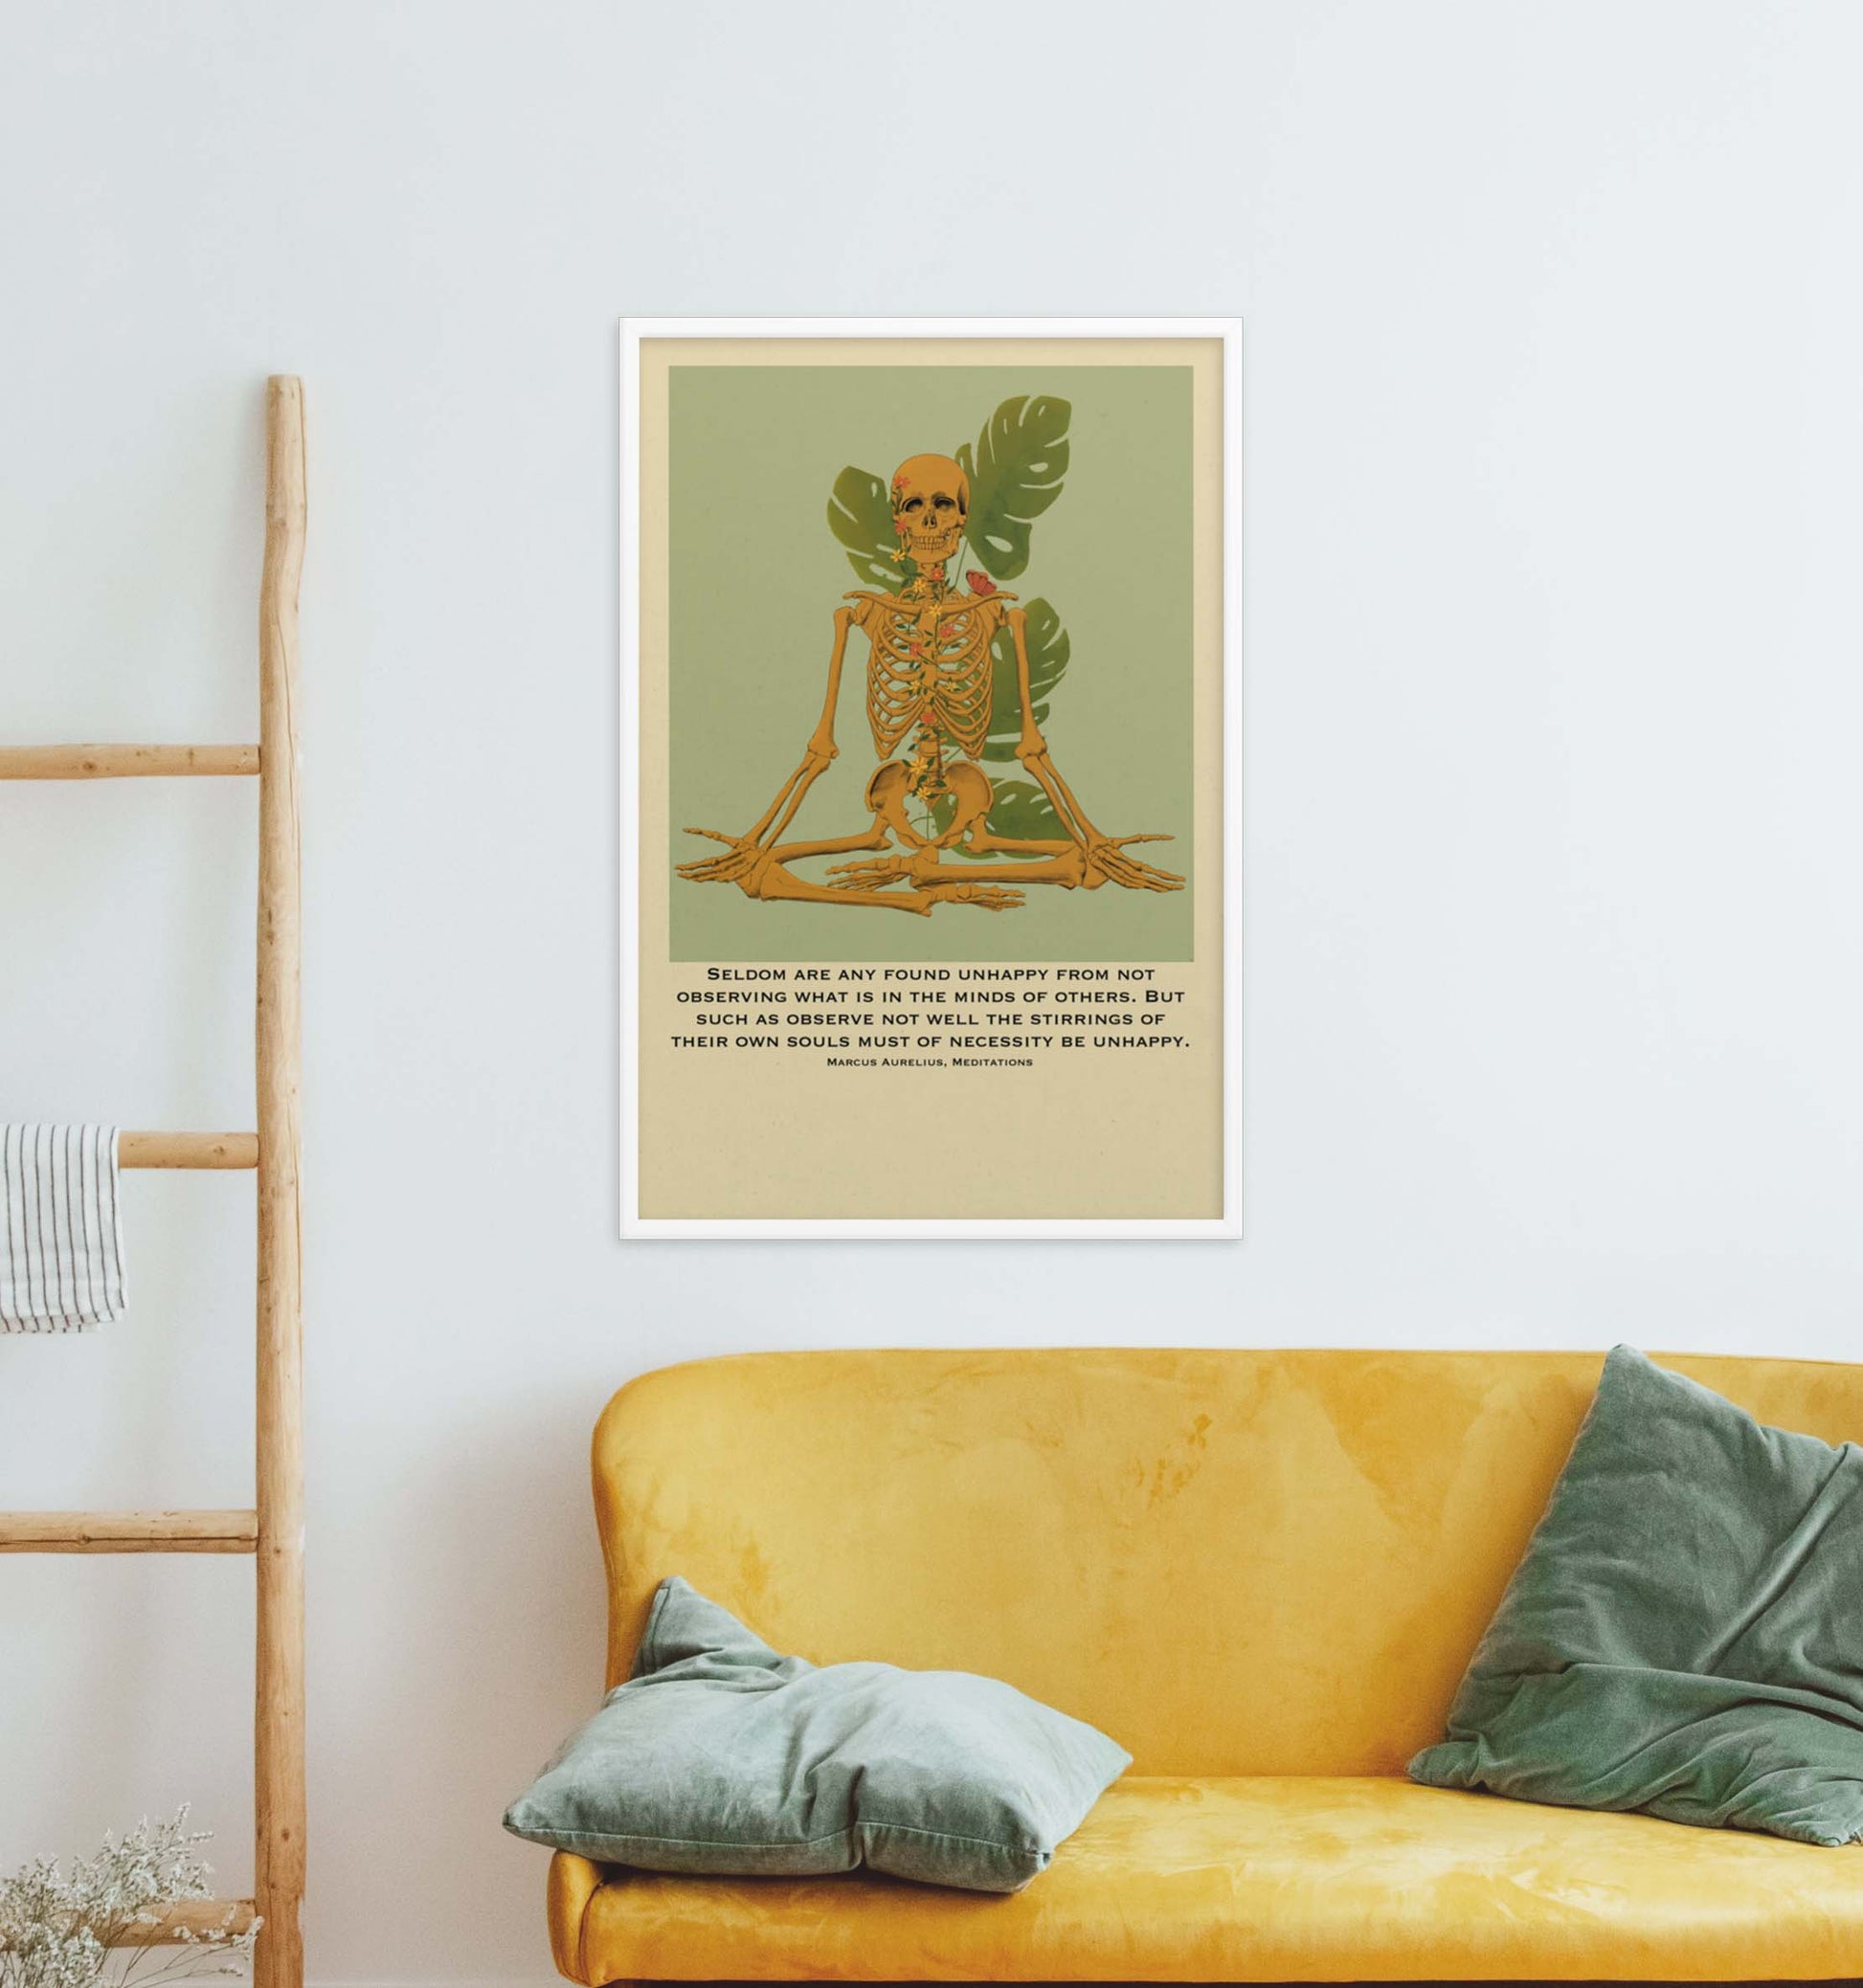 Marcus Aurelius quote meditating skeleton art poster in white frame